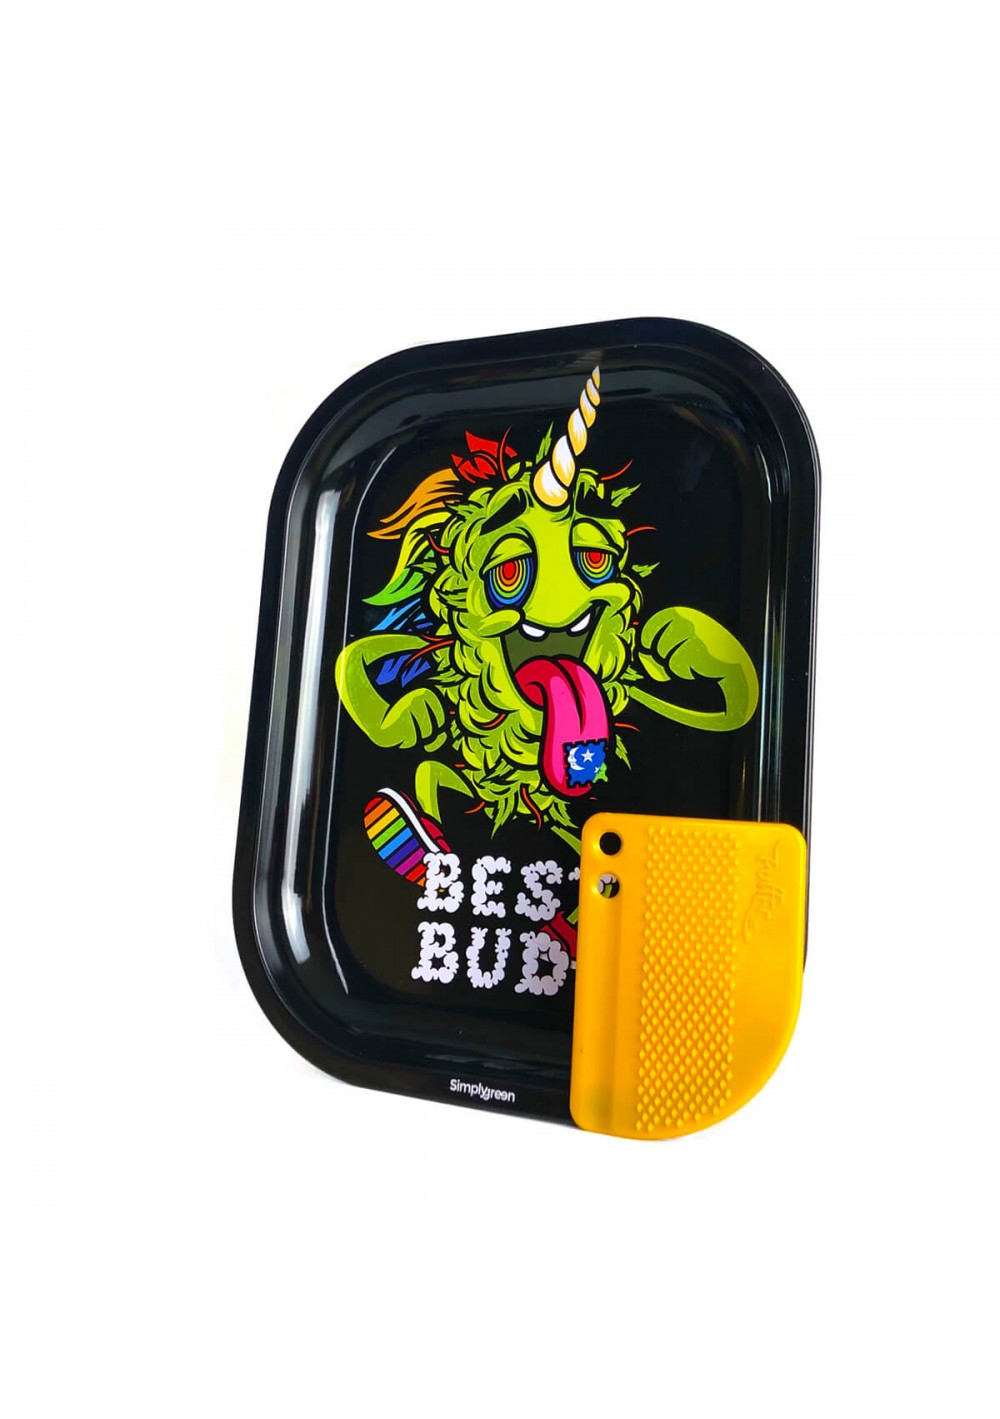 Vassoietto in Metallo Best Bud - LSD - cm 14x18